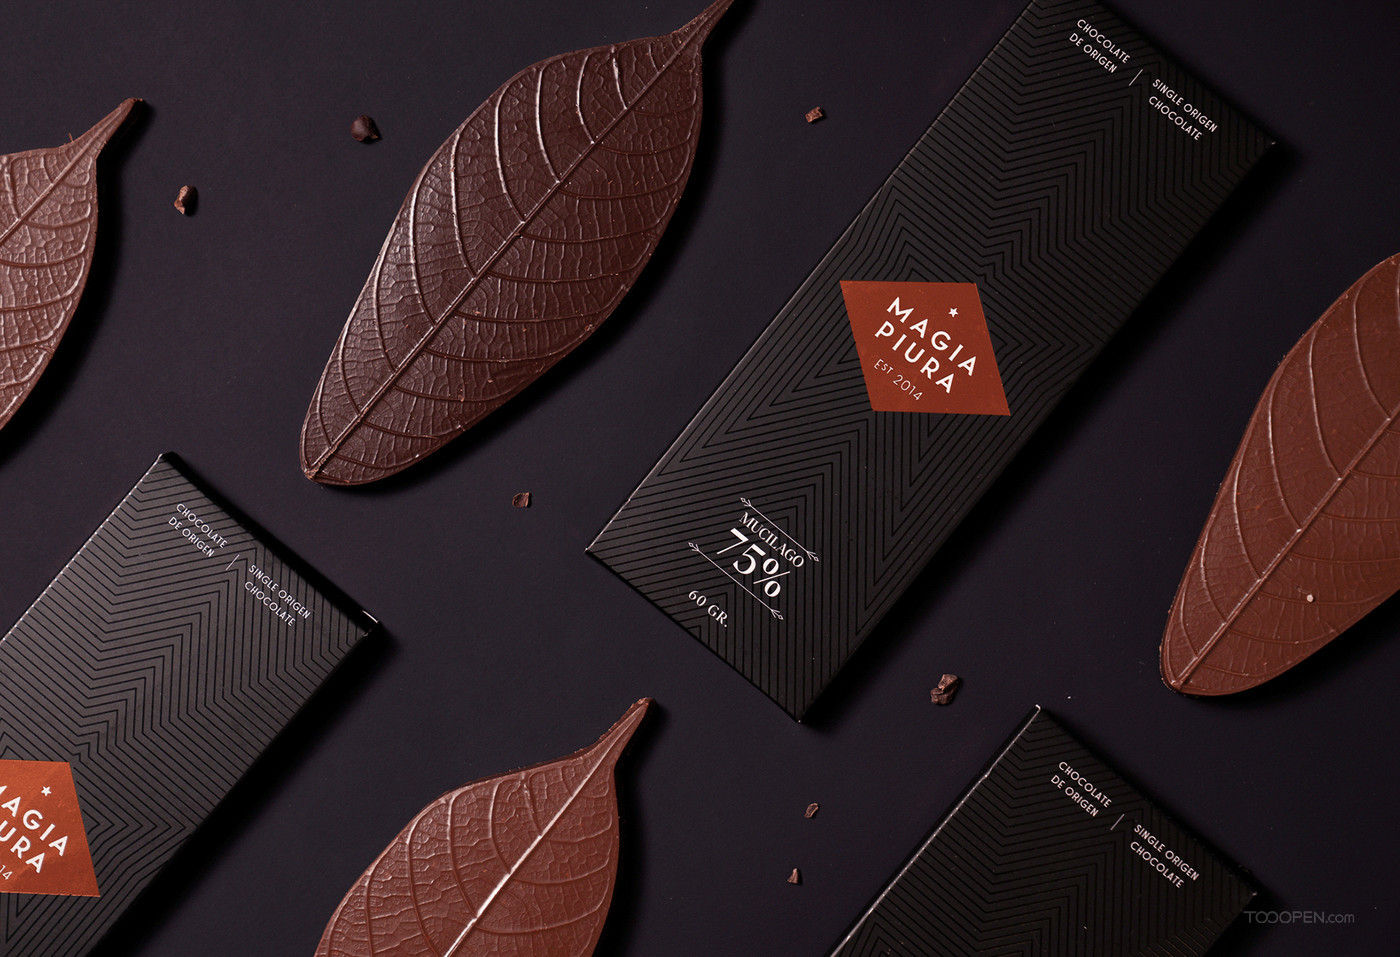 仿生树叶造型纯度巧克力食品包装设计作品欣赏-09